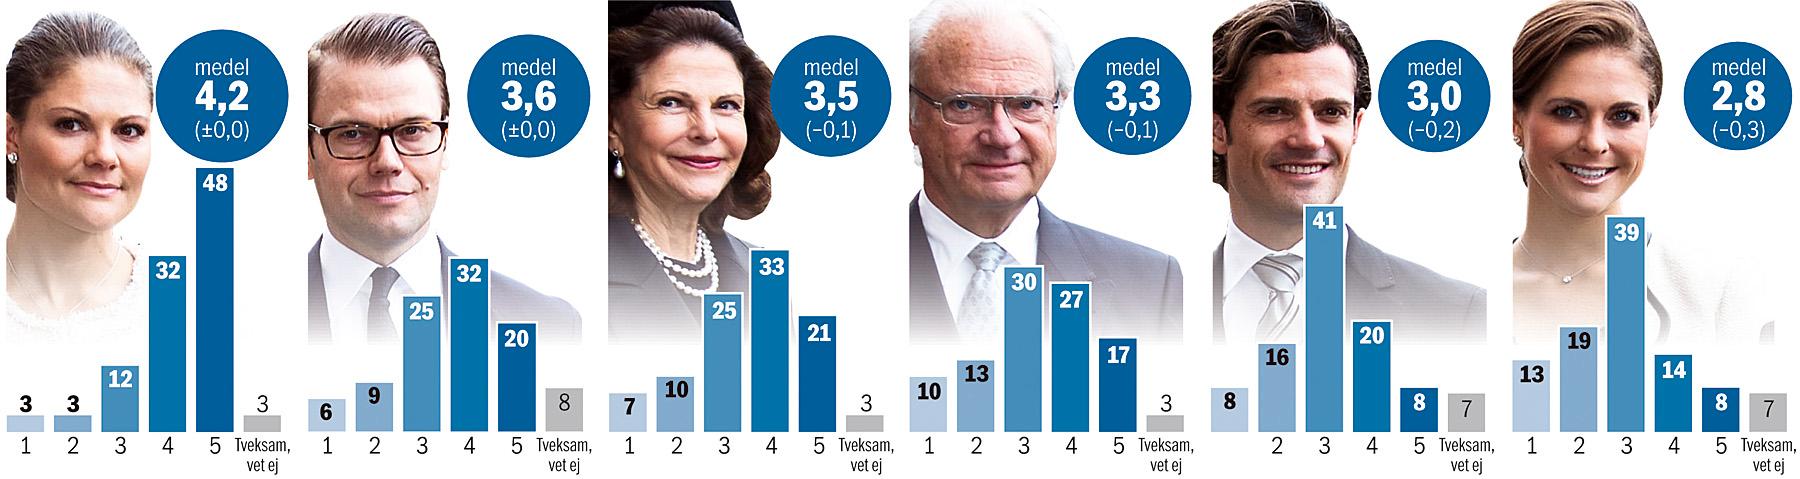 Så stort förtroende har svenskarna för… Så ställdes frågan: Hur stort förtroende har du för XX? Svara på en skala 1 till 5 där 5 står för mycket stort förtroende och 1 står för inget förtroende alls.